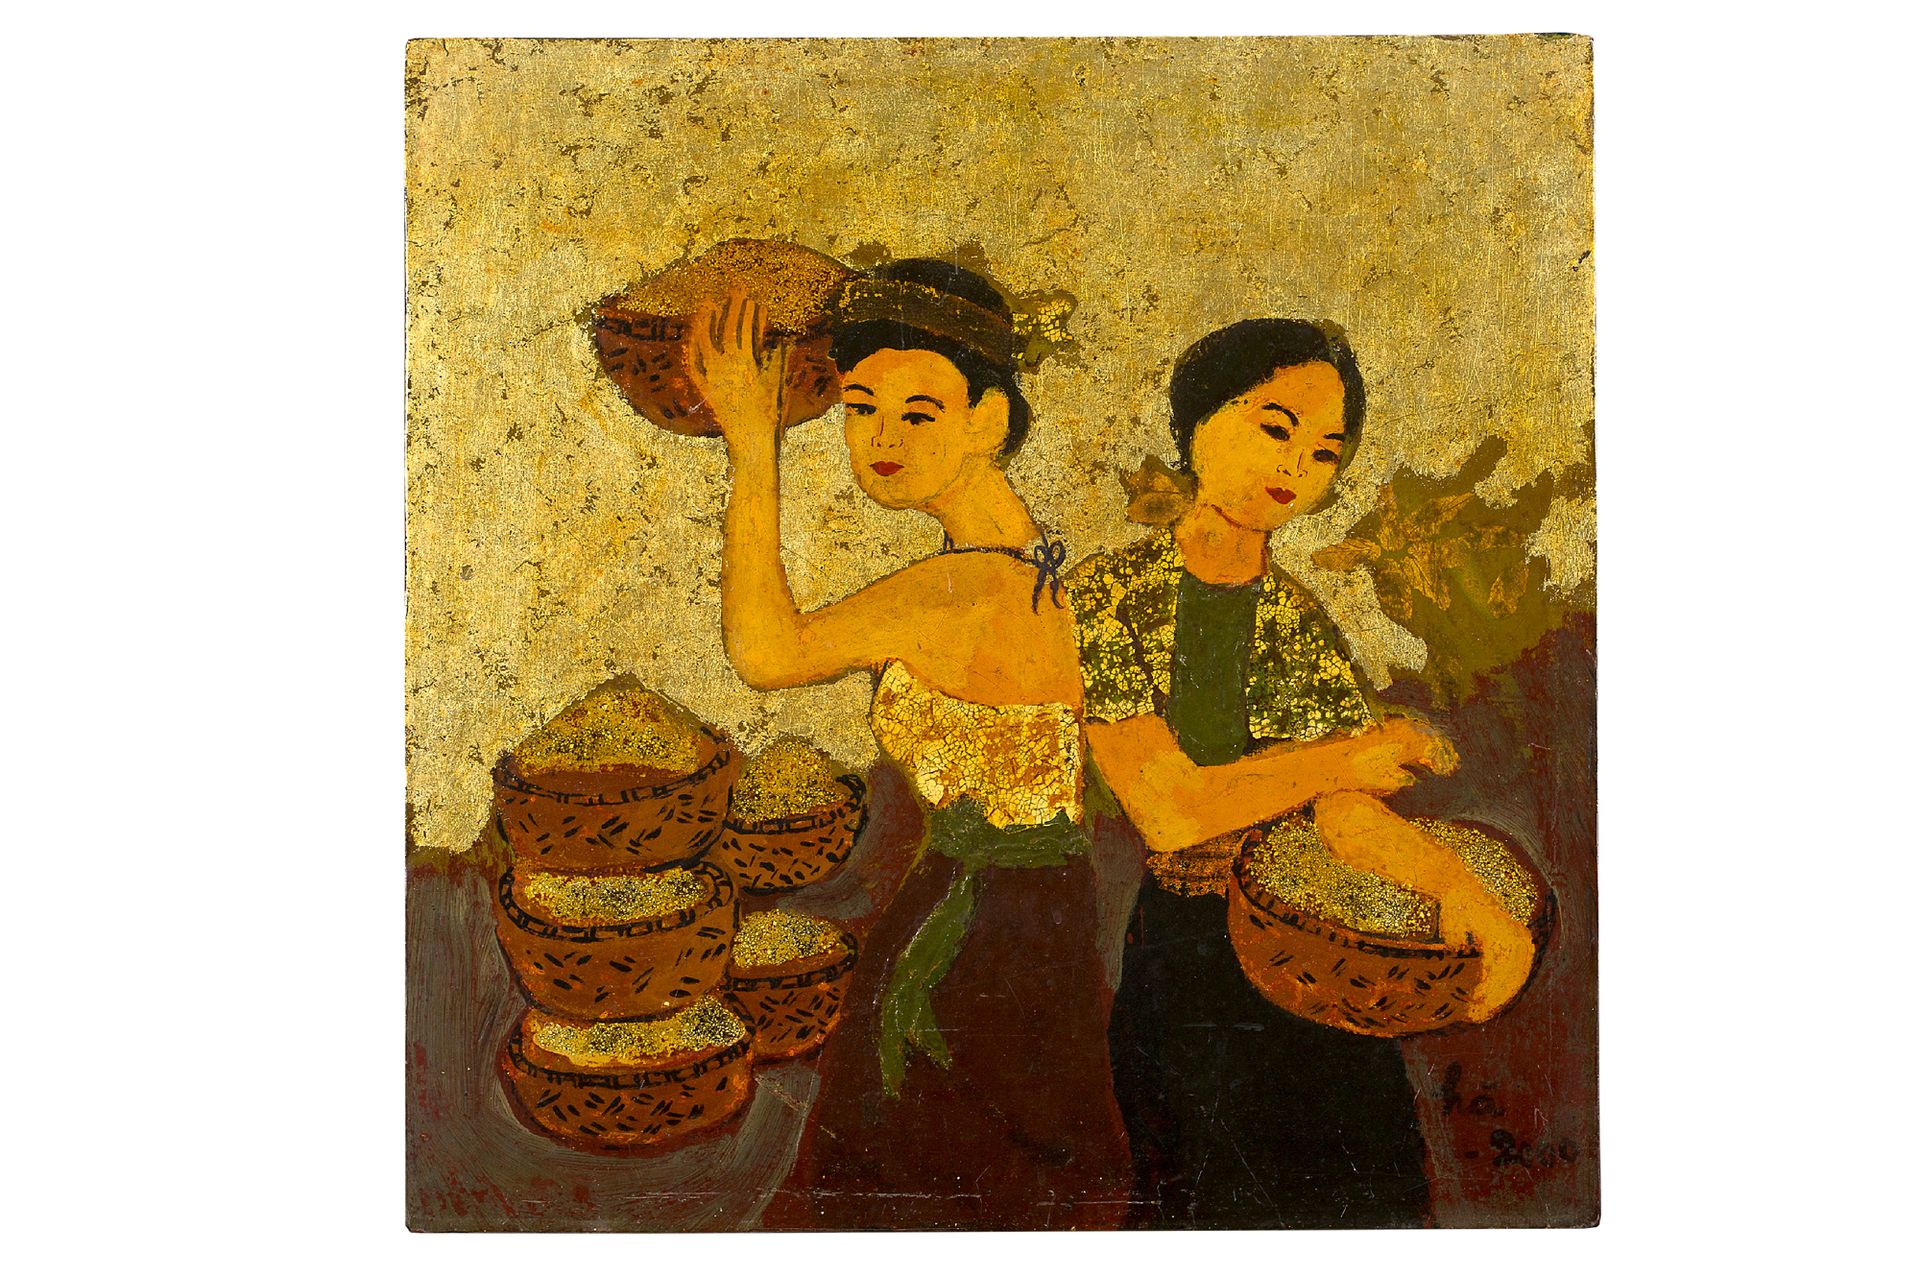 Ecole vietnamienne Frauen mit Körben, 2000
Lack mit Goldhöhungen und Eierschalen&hellip;